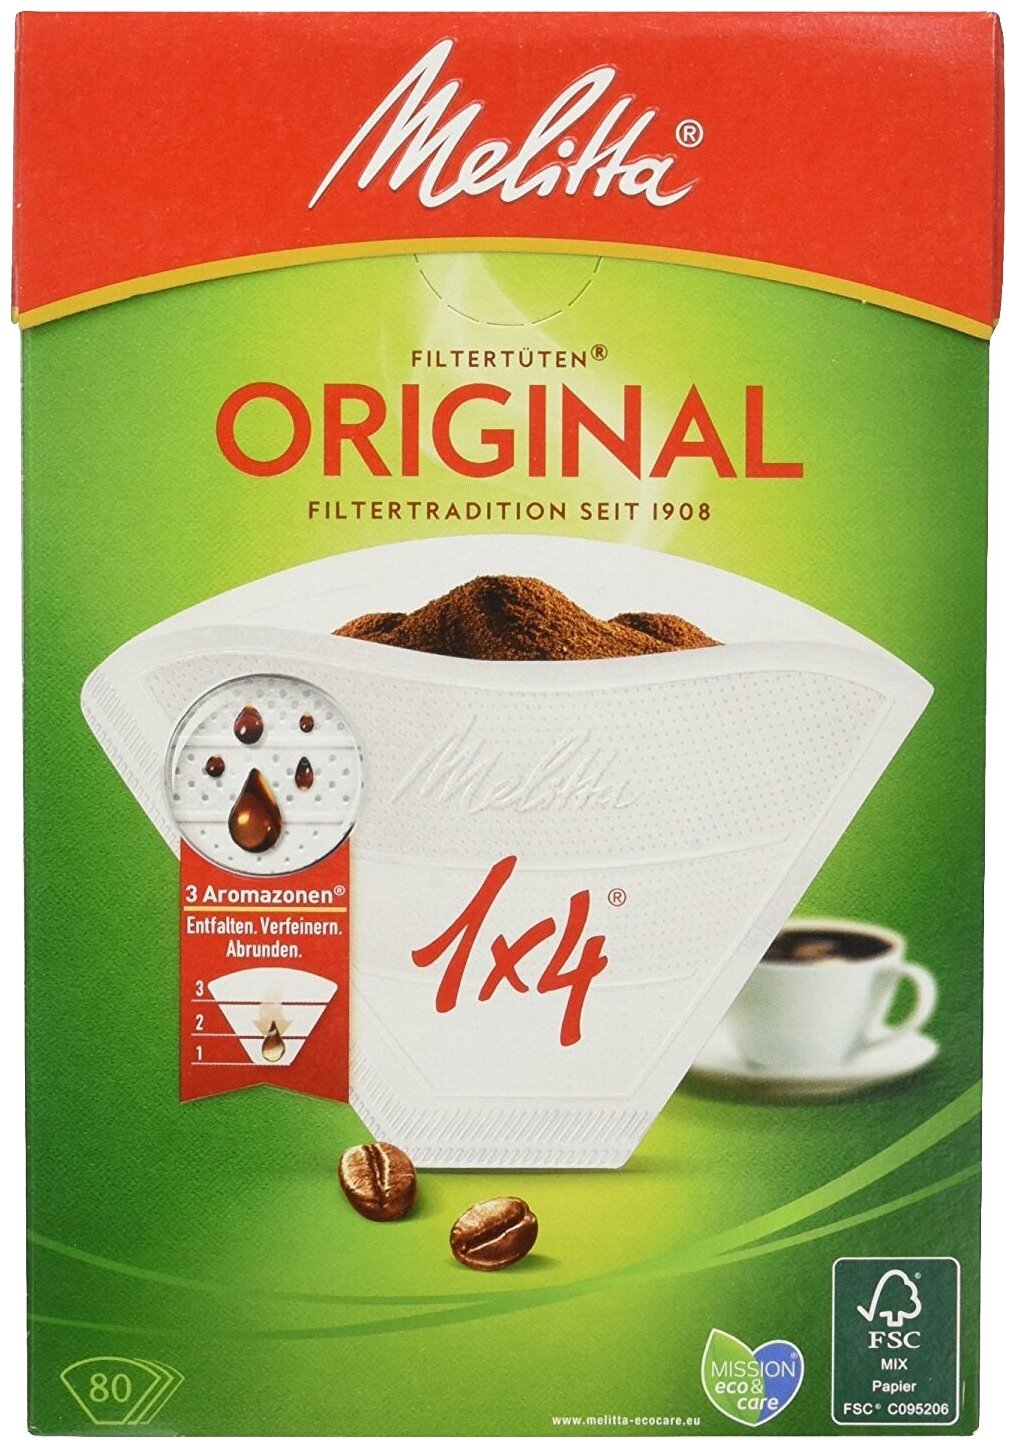 Одноразовые фильтры для капельной кофеварки Melitta Original белые Размер 1х4, белый, 80шт.